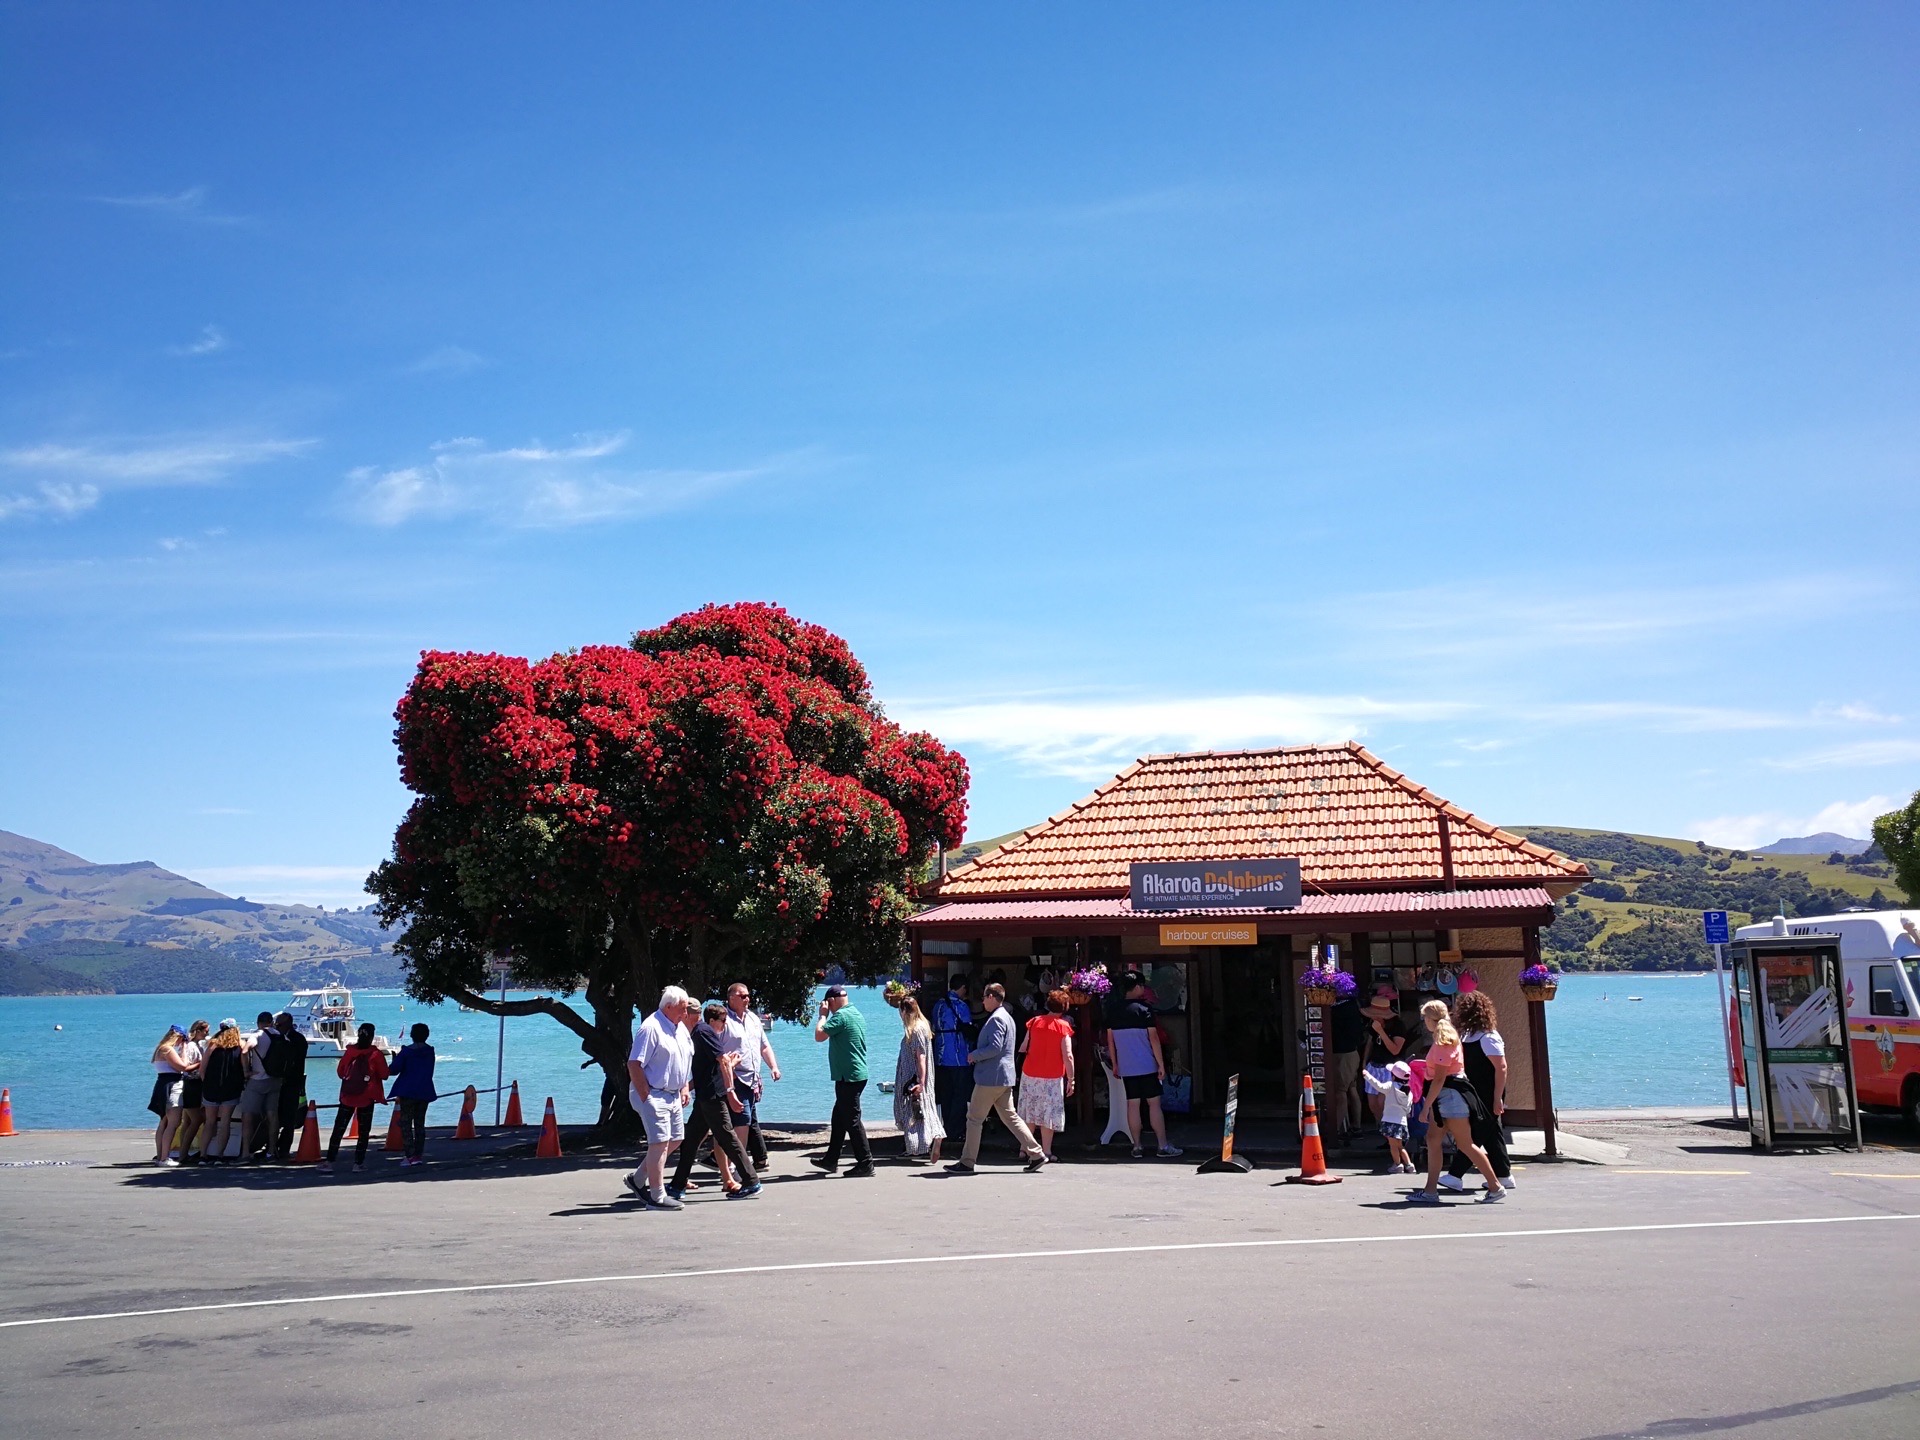 新西兰南岛的法国风情小镇阿卡罗阿(Akaroa)是去新西兰旅游的必去之地。拥有浓浓的法国风情、美丽的